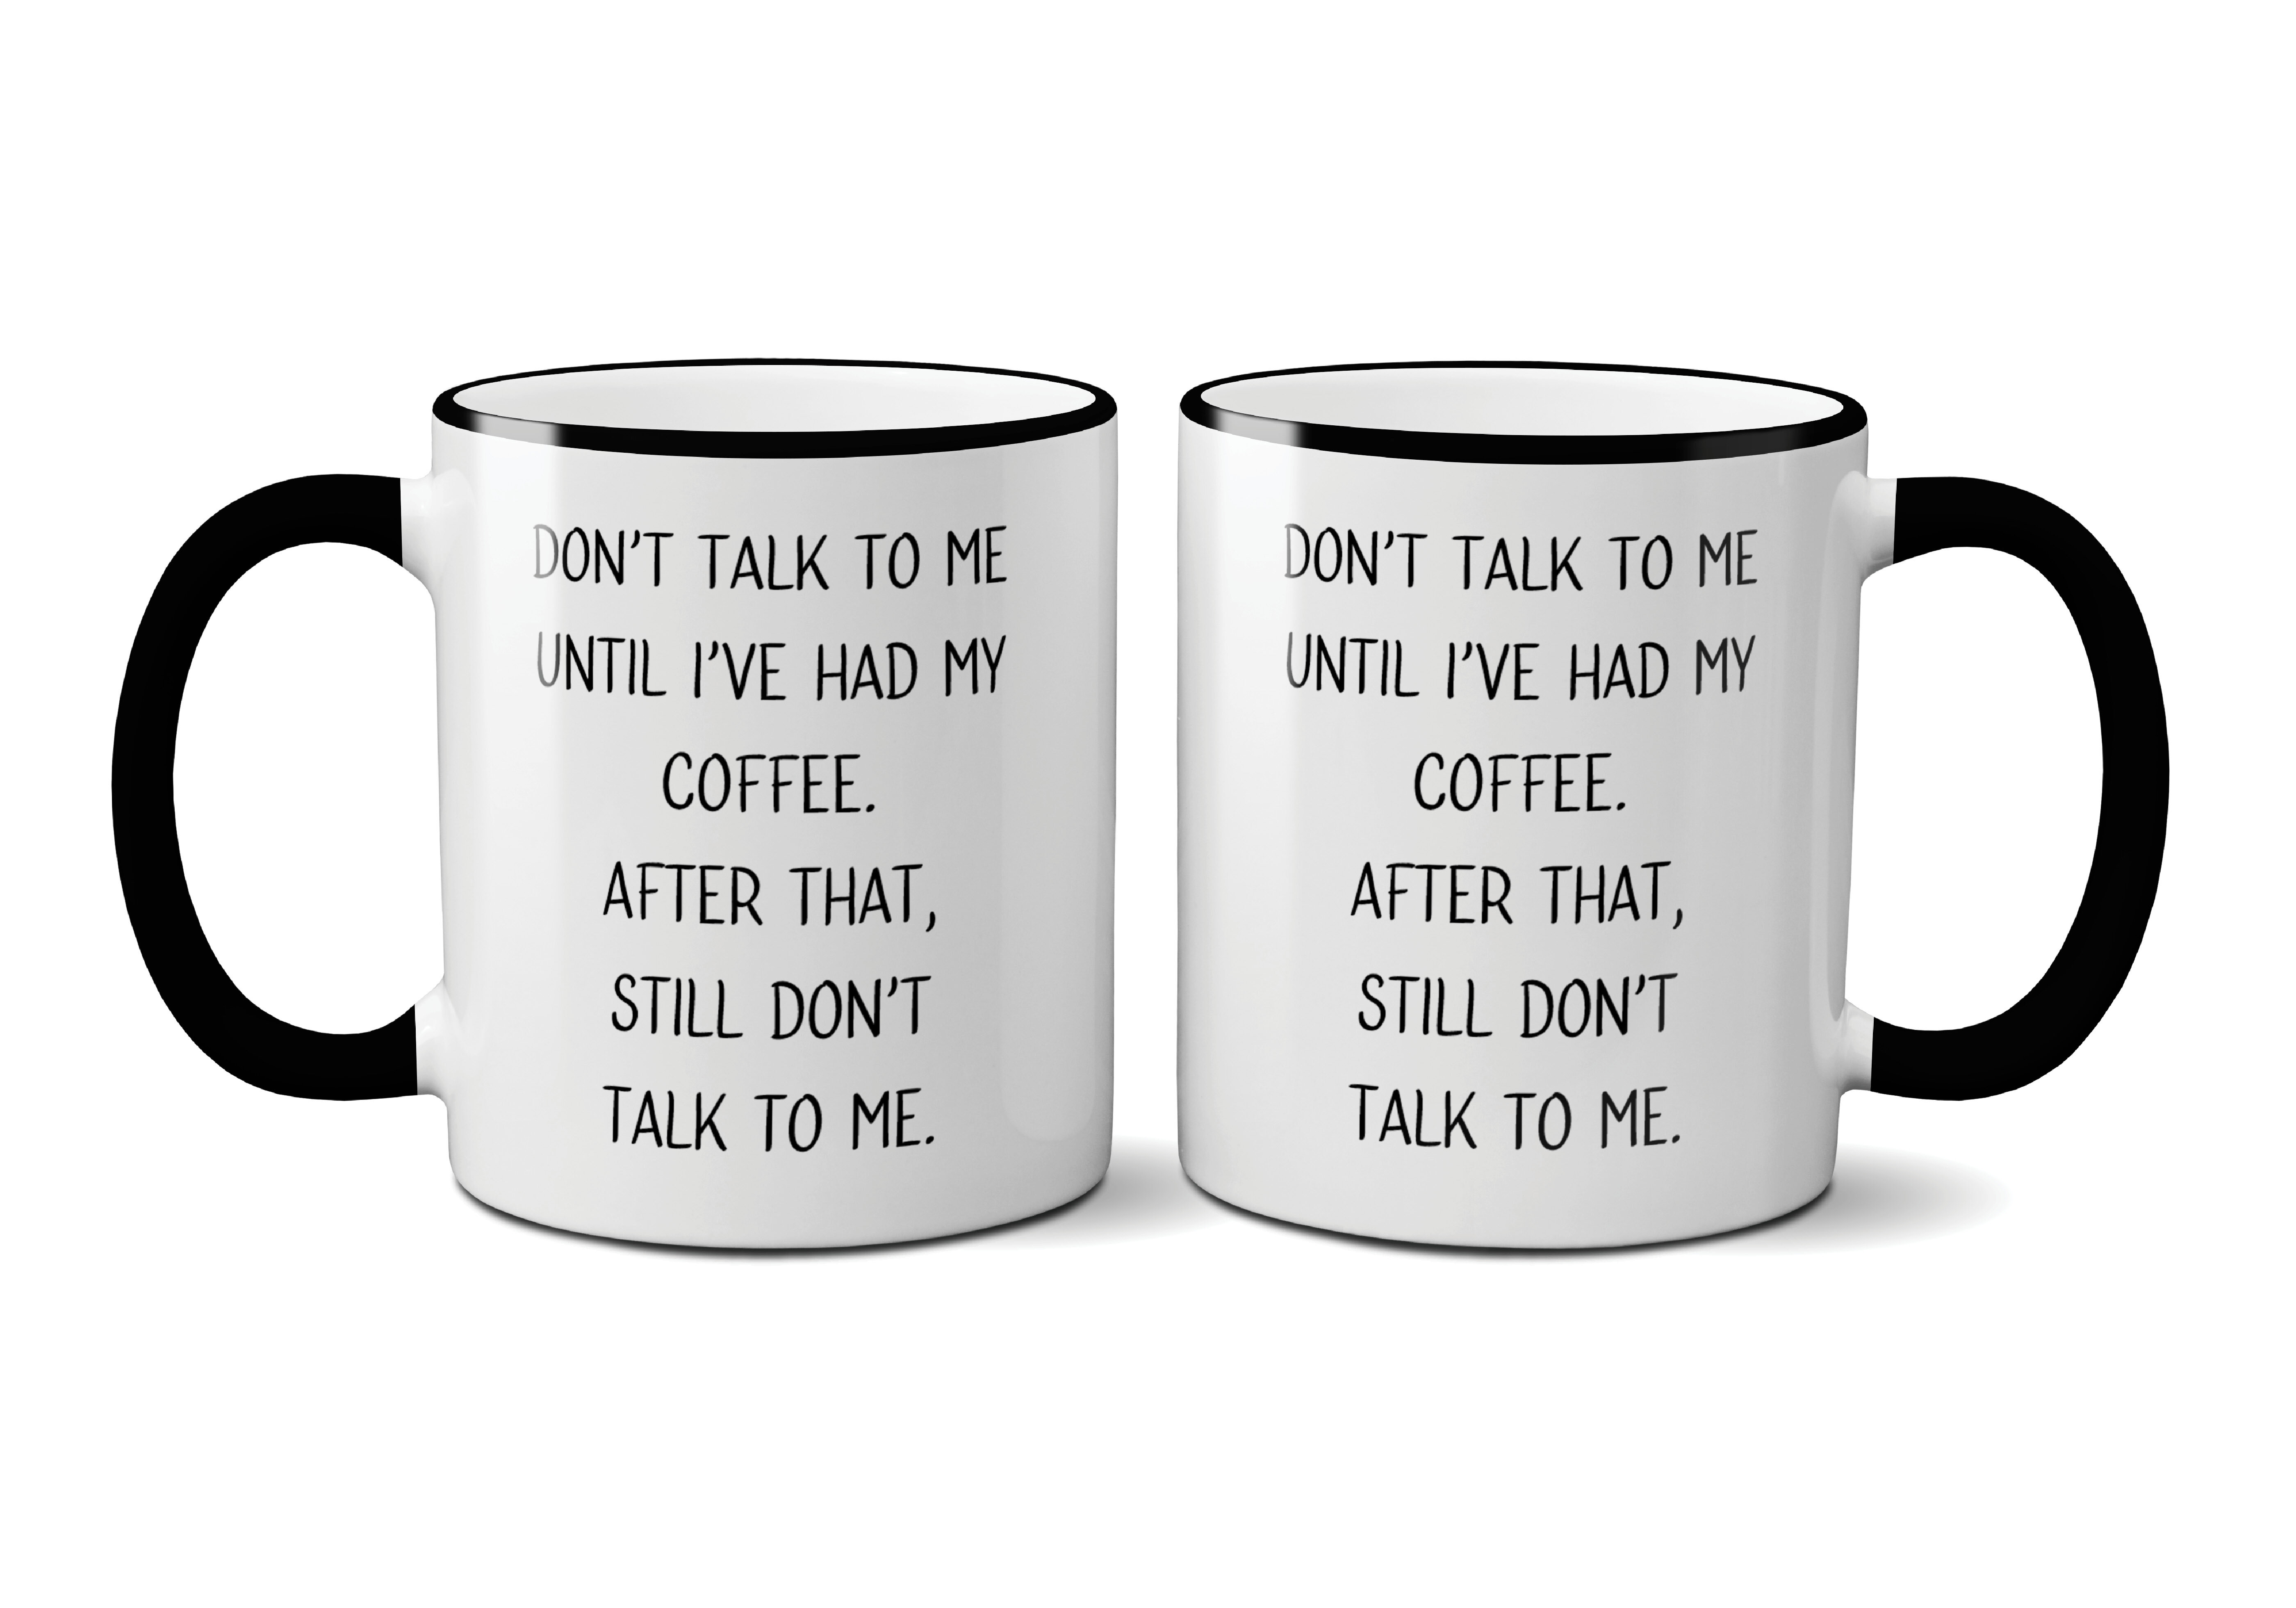 https://assets.wfcdn.com/im/99916123/compr-r85/5095/50957089/difiore-ceramic-coffee-mug.jpg